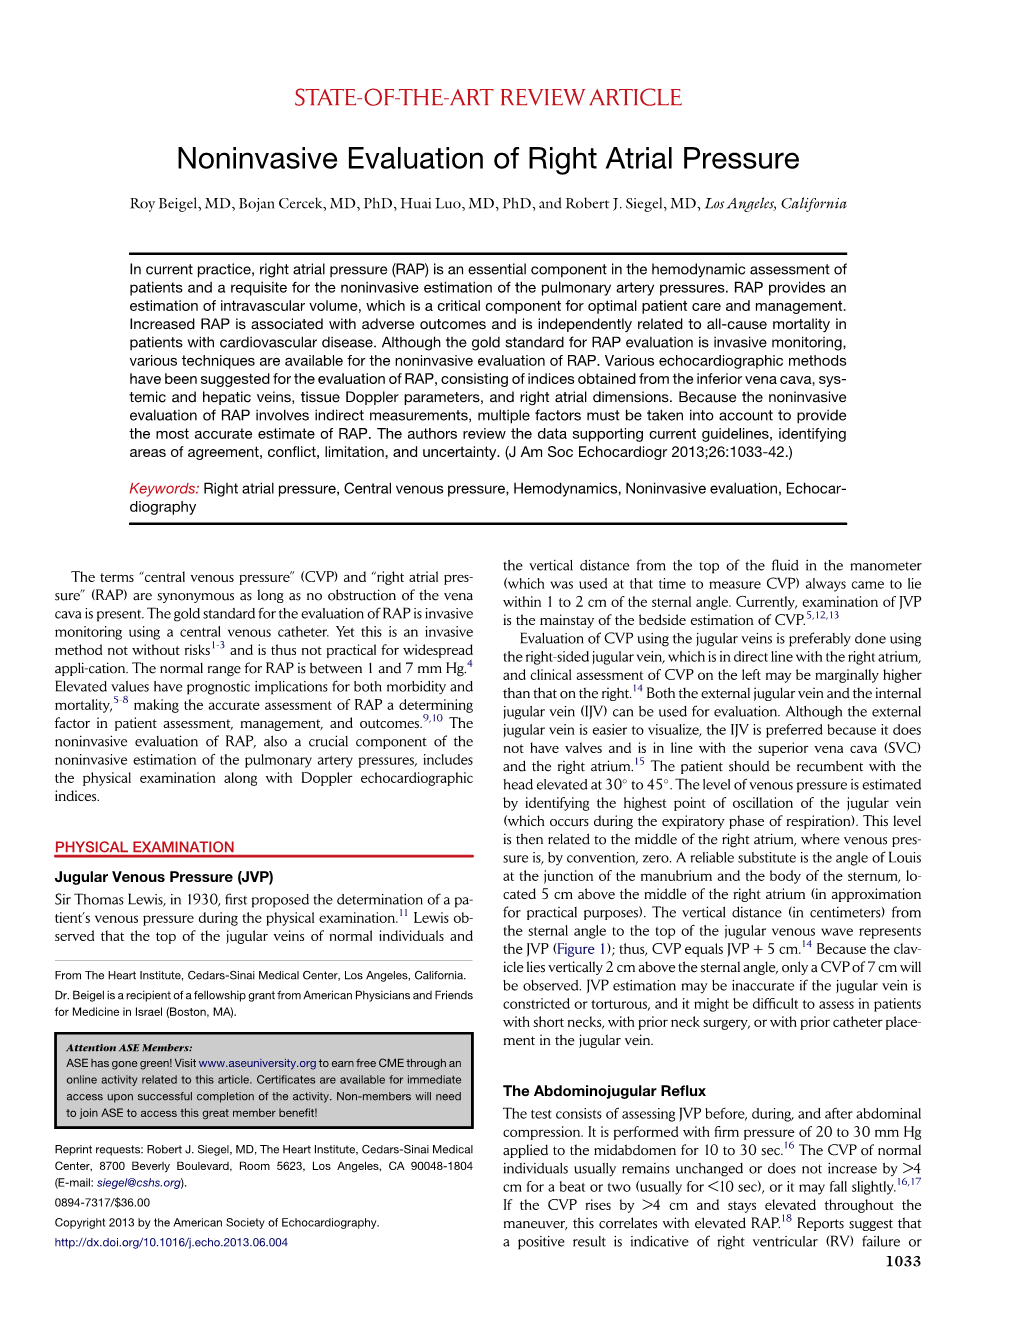 Noninvasive Evaluation of Right Atrial Pressure